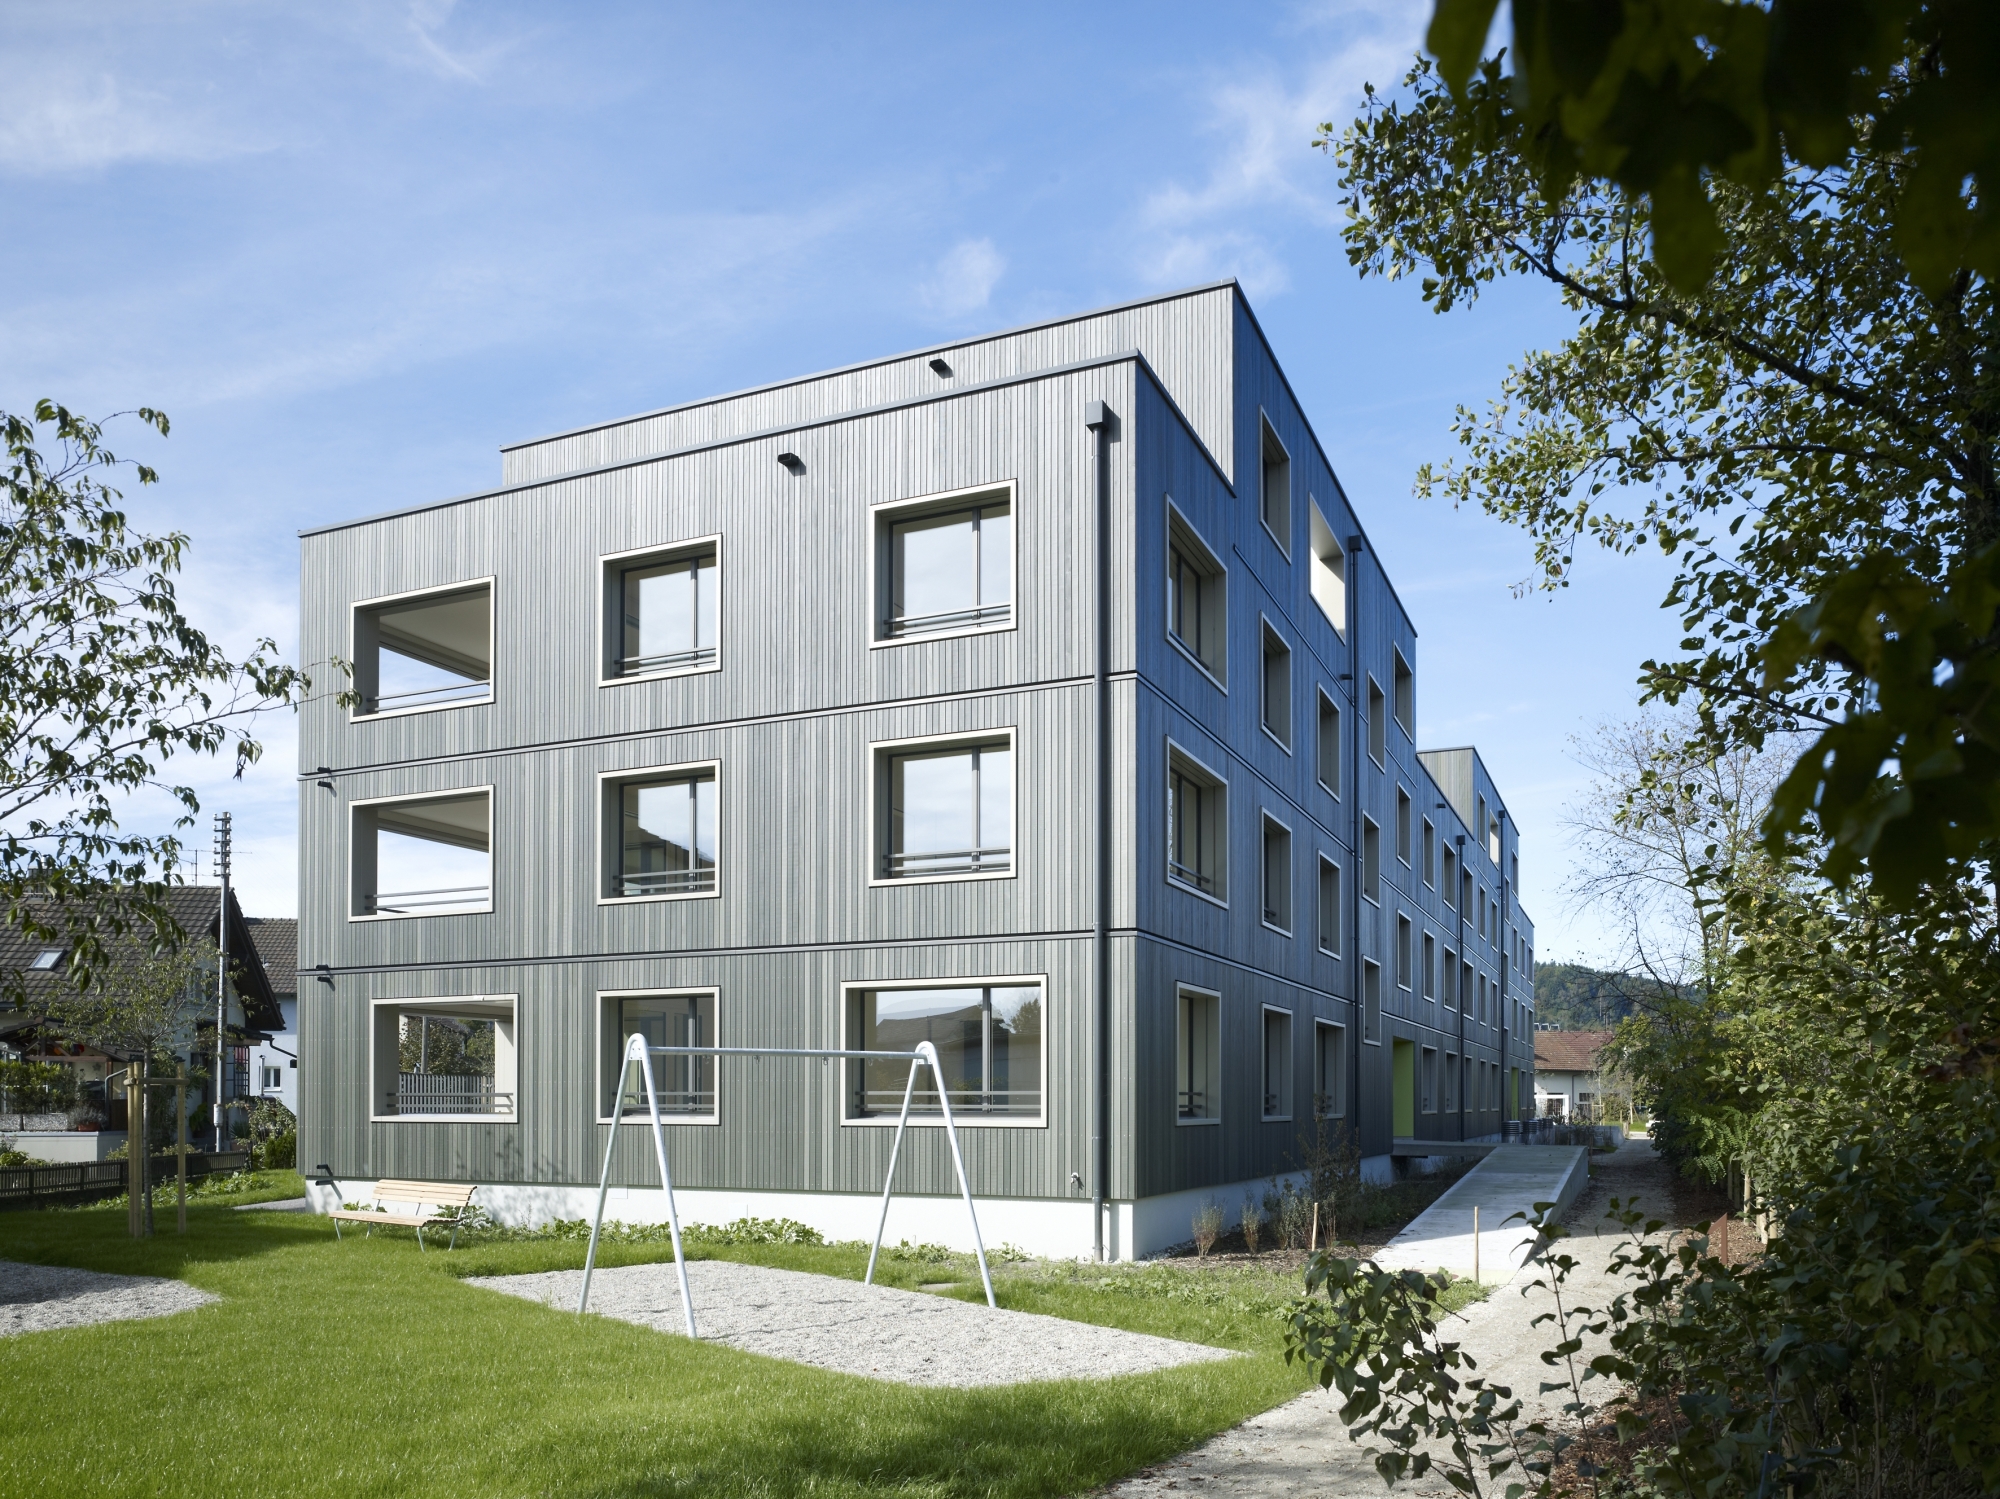 La «Swisswoodhouse» se révèle à la fois flexible et écologique, puisque ses modules sont fabriqués en bois suisse.